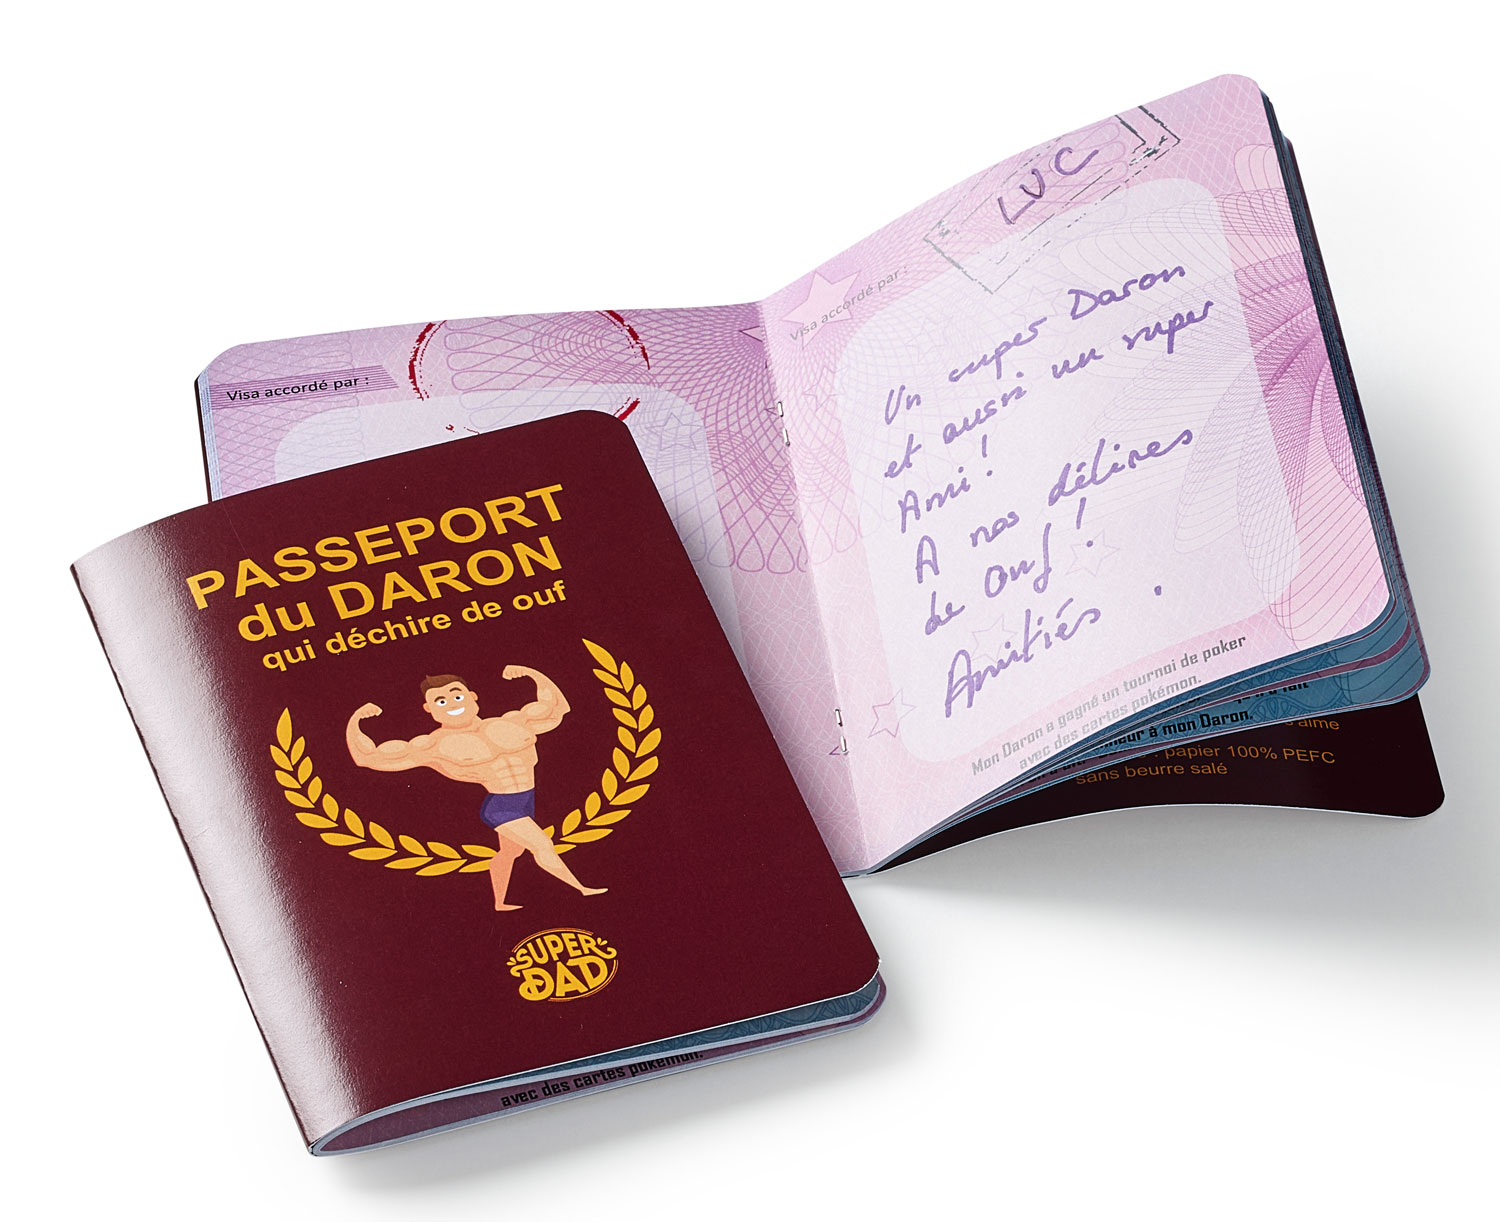 Passeport du Daron qui déchire de ouf